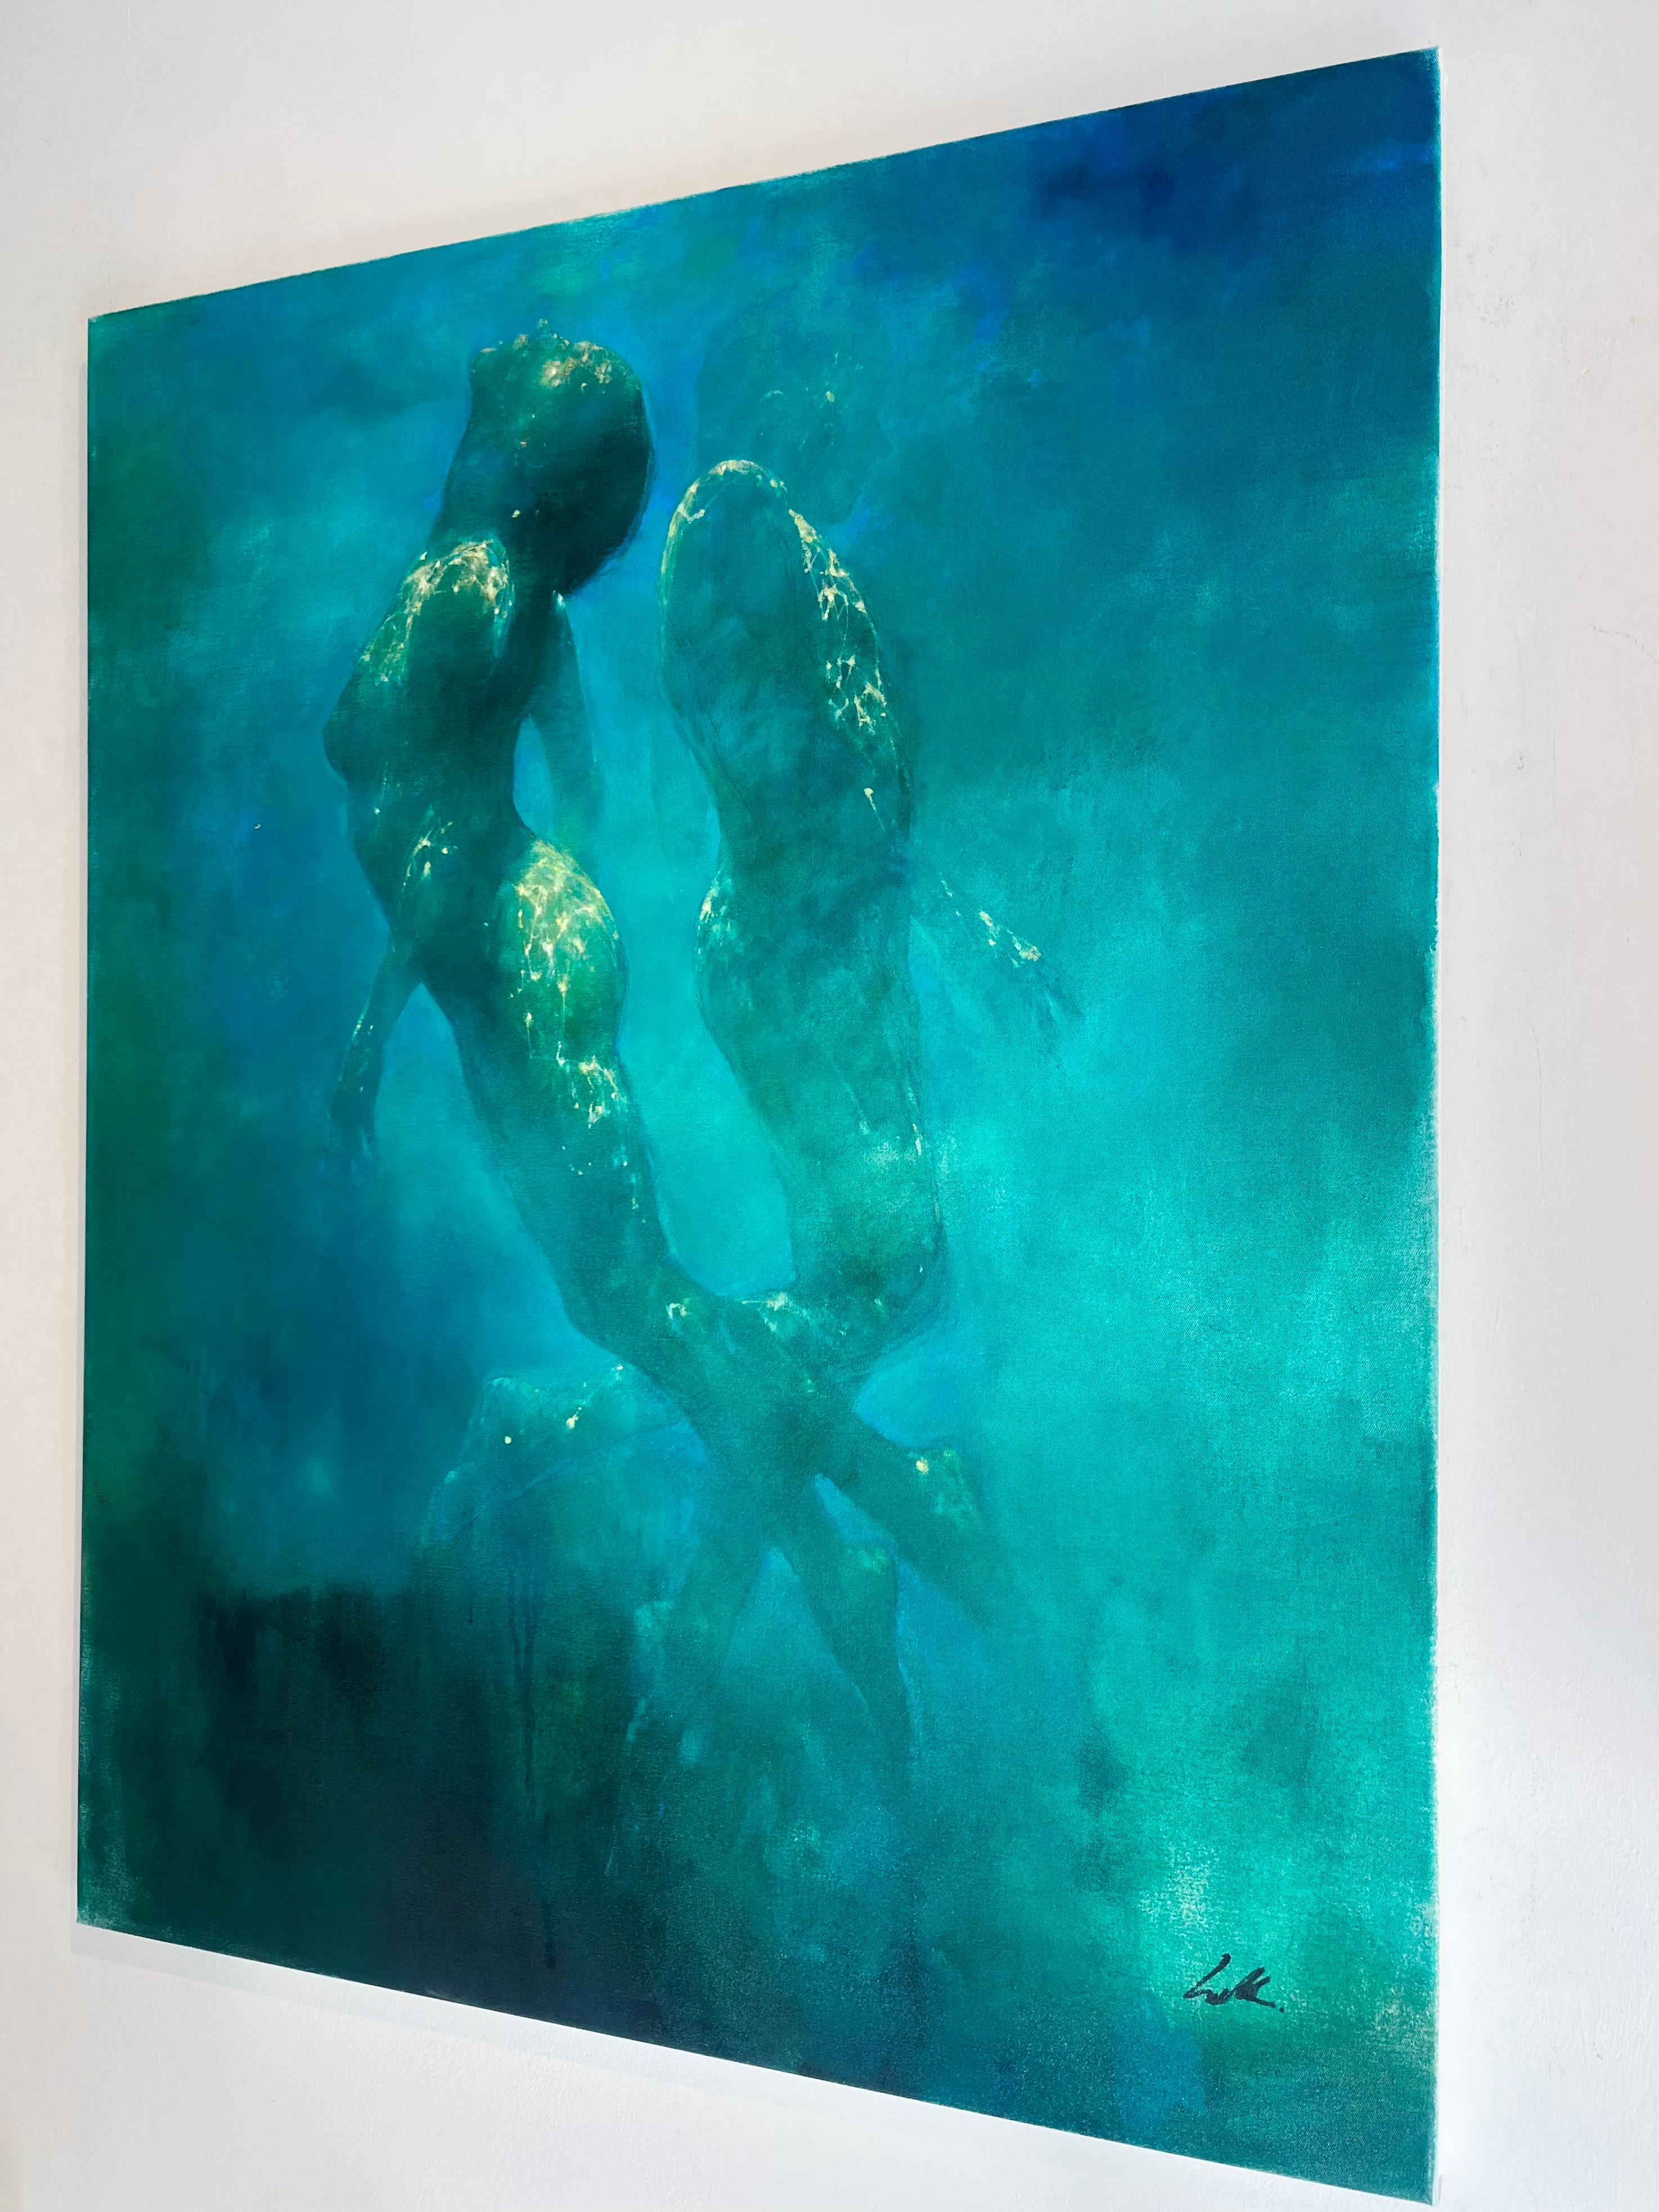  Ozean Whispers - abstrakte Kunst unter Wasser Akt menschliche figurative Malerei (Abstrakter Expressionismus), Painting, von Bill Bate